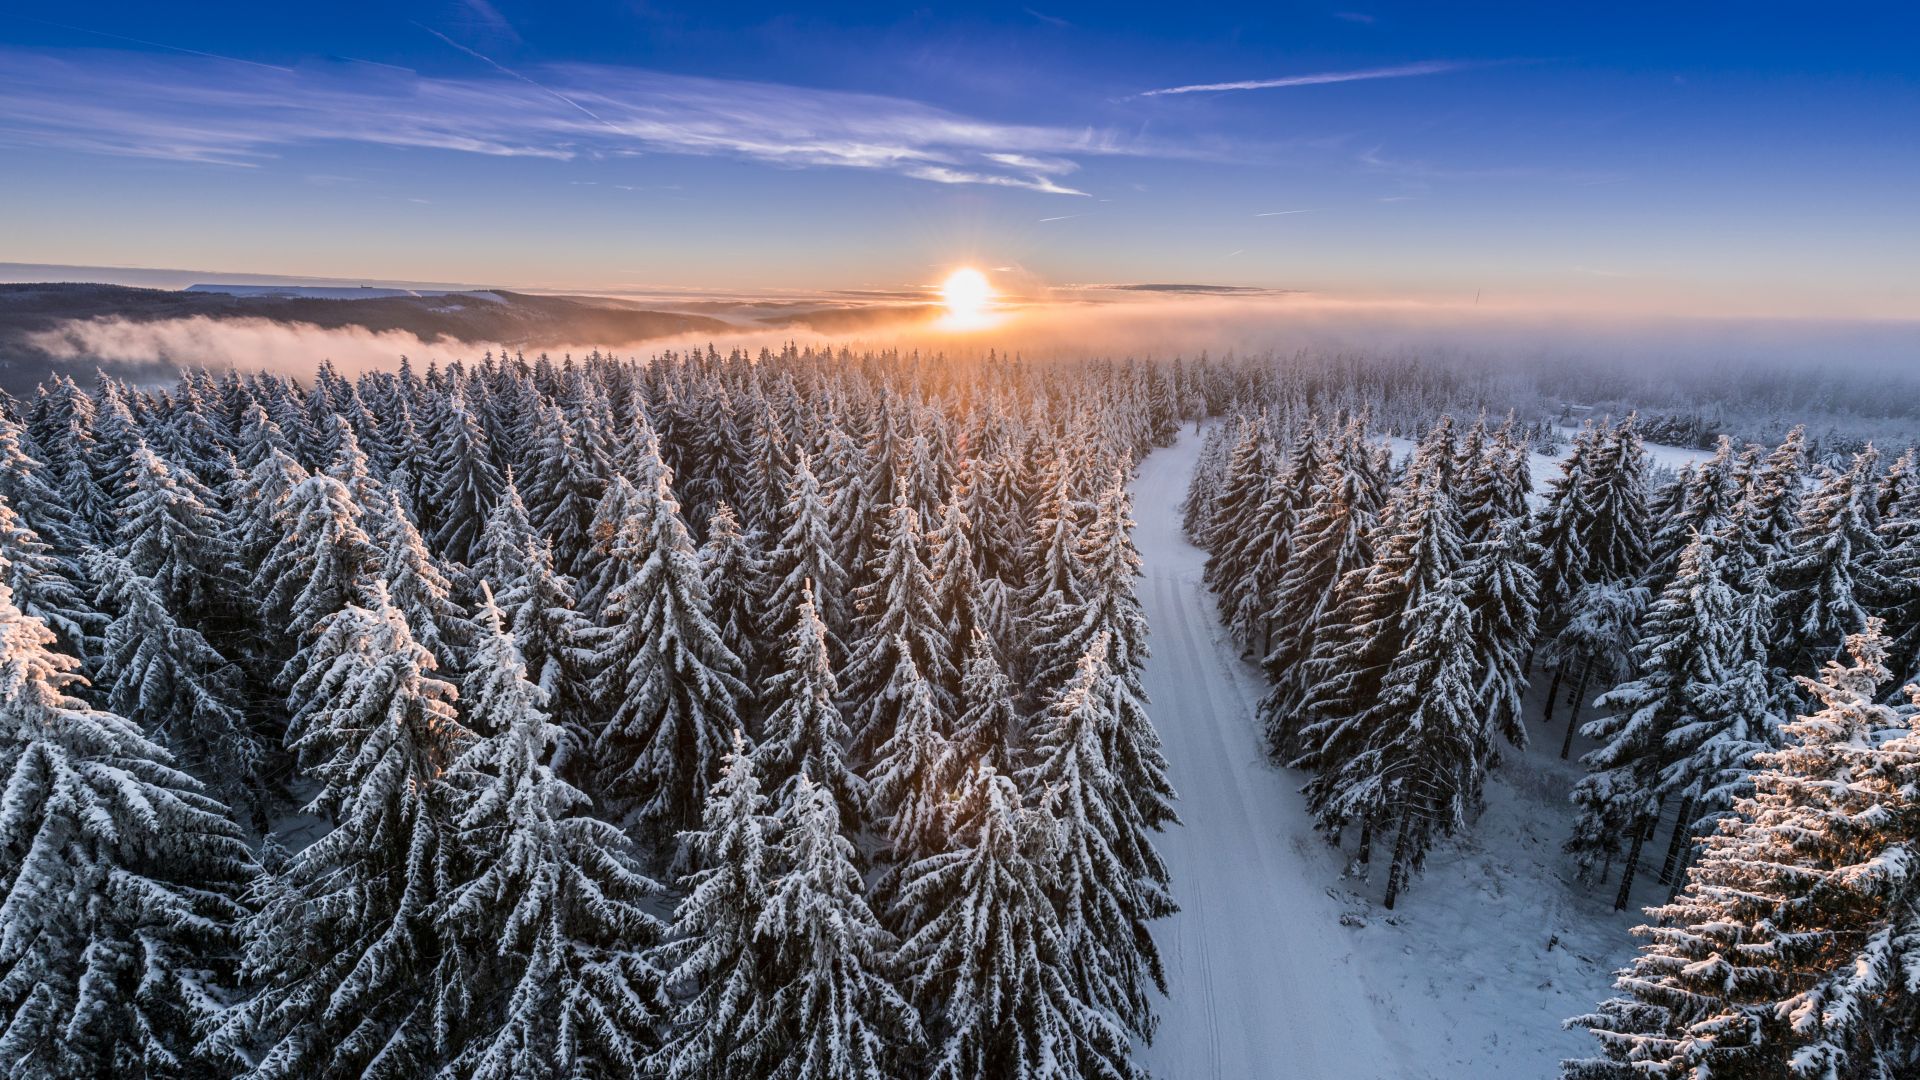 Masserberg / Schleusegrund: Snowy Thuringian Forest at sunrise / sunset